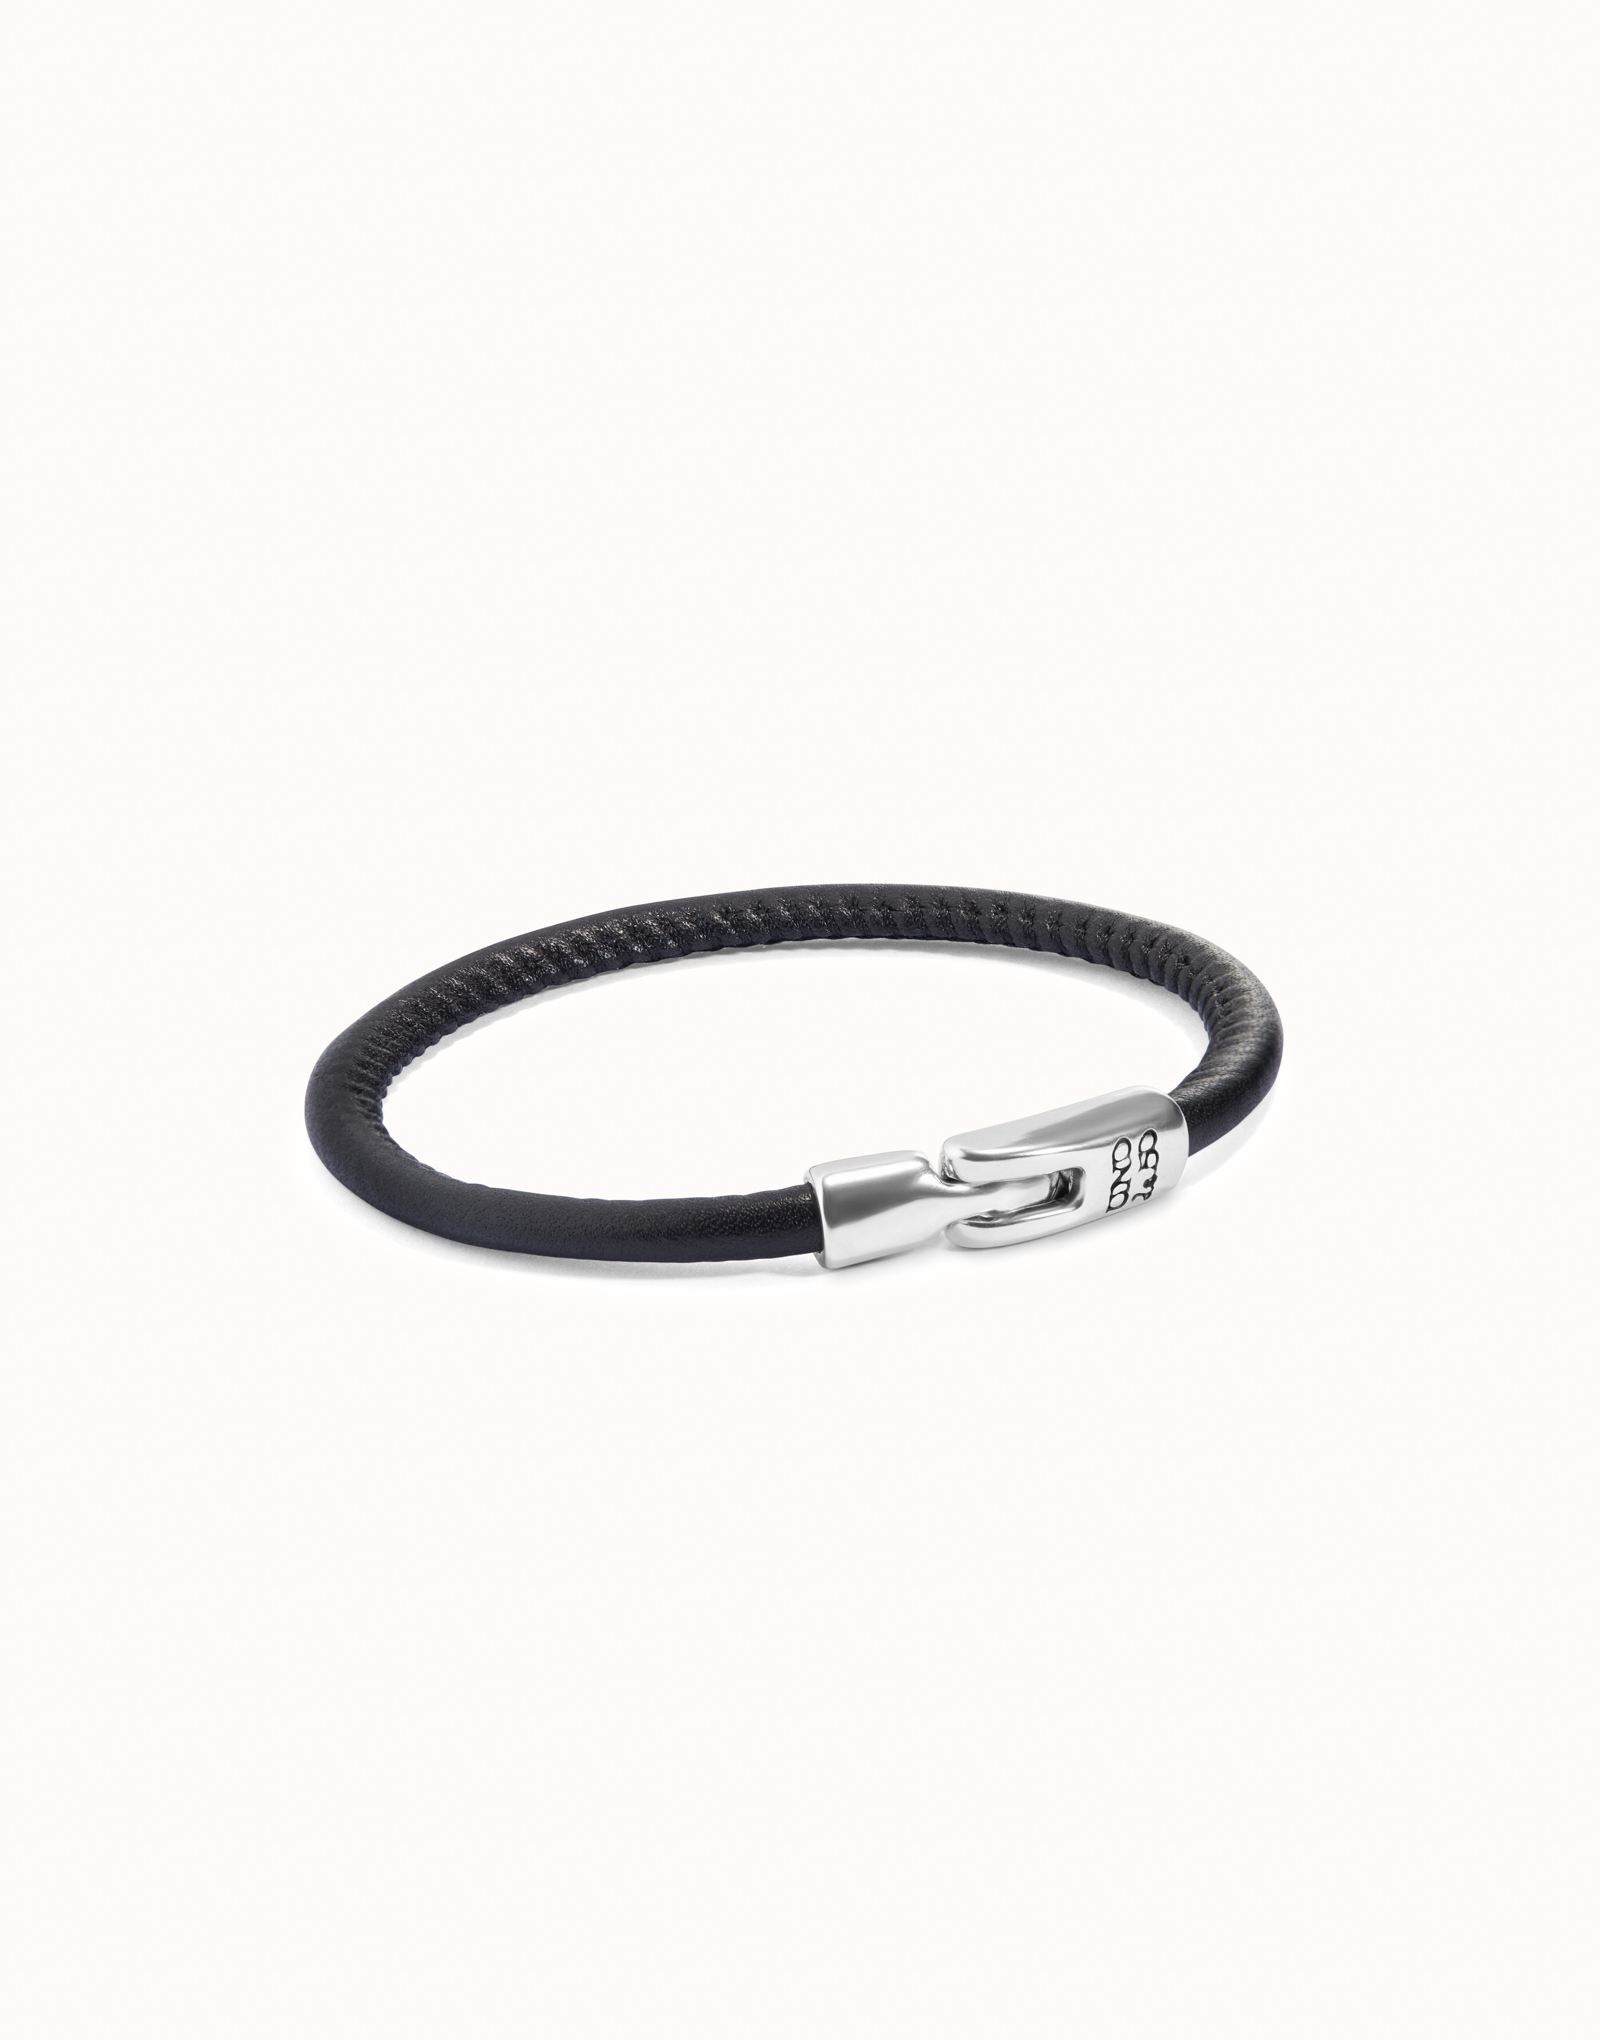 Bracelet en cuir couleur noire plaqué argent, Argent, large image number null